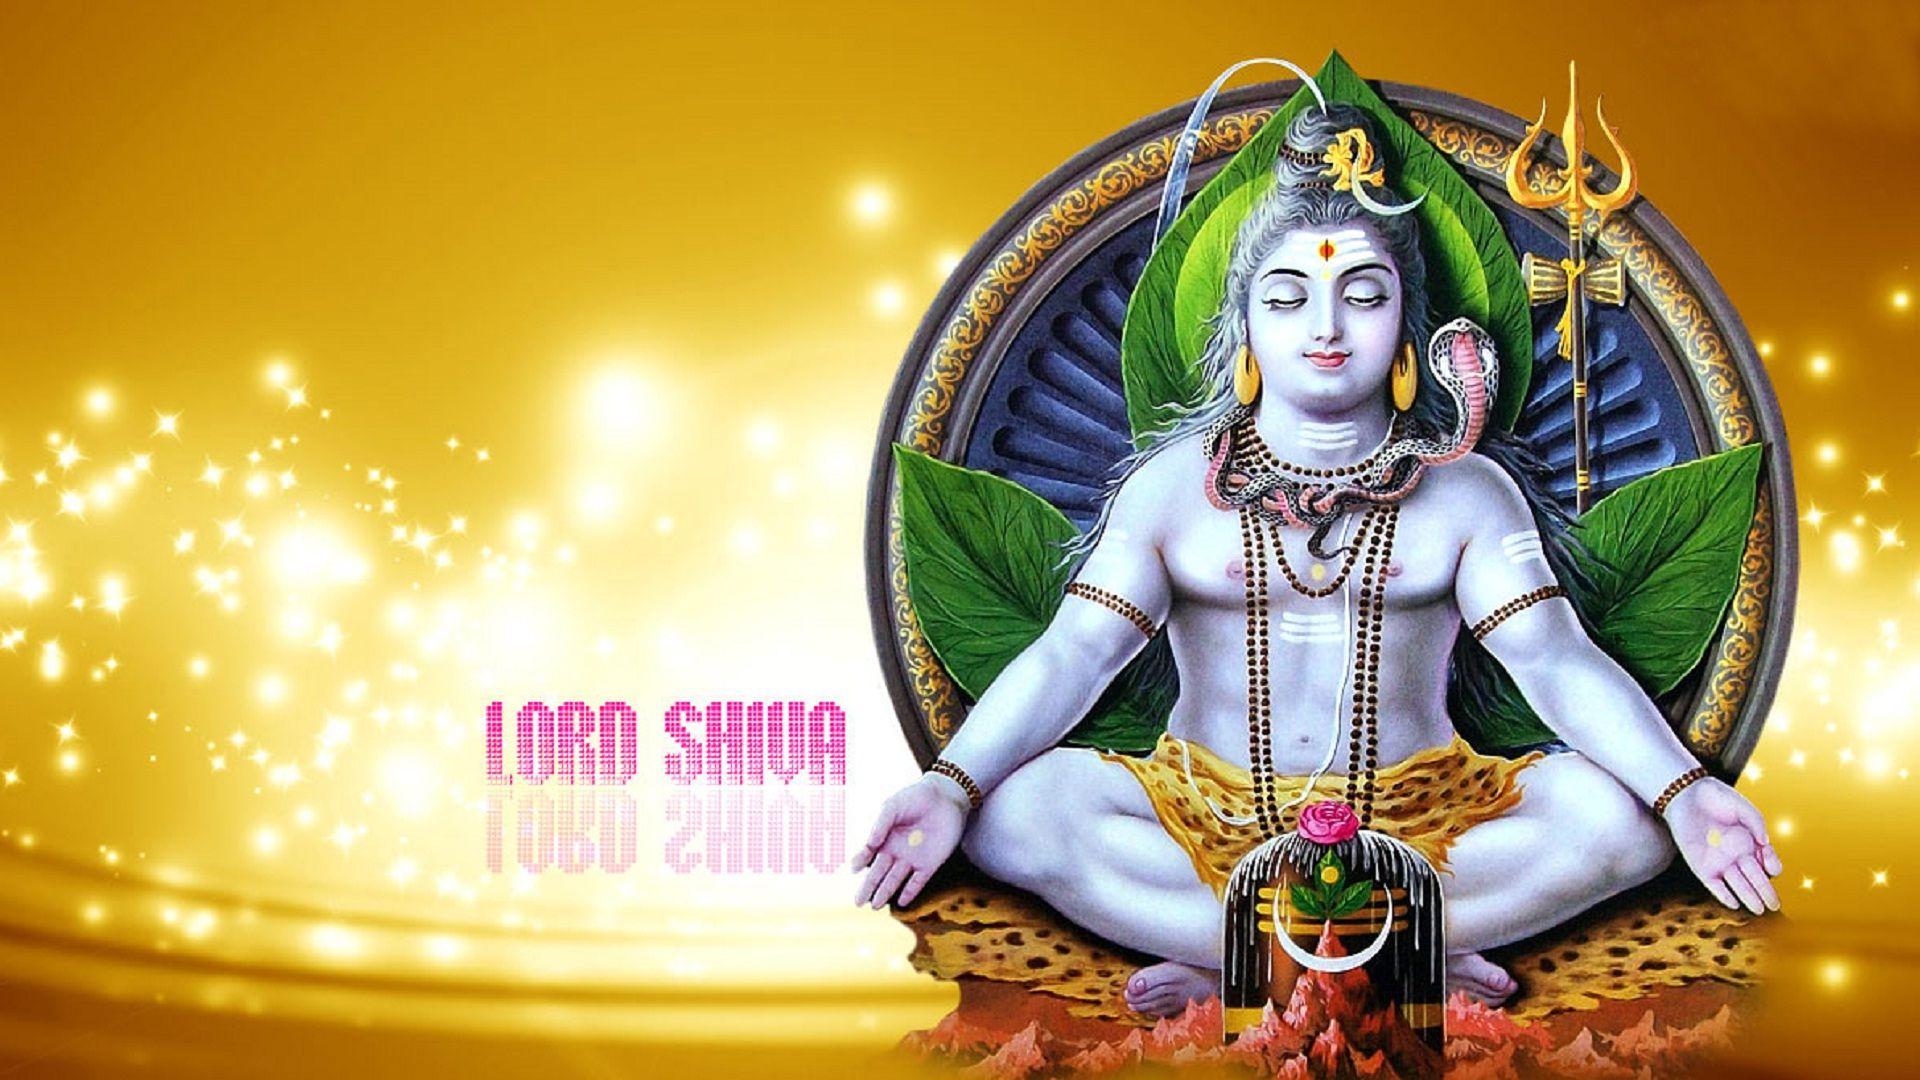 Lord Shiva har har mahadev wallpaper. HD Wallpaper Rocks